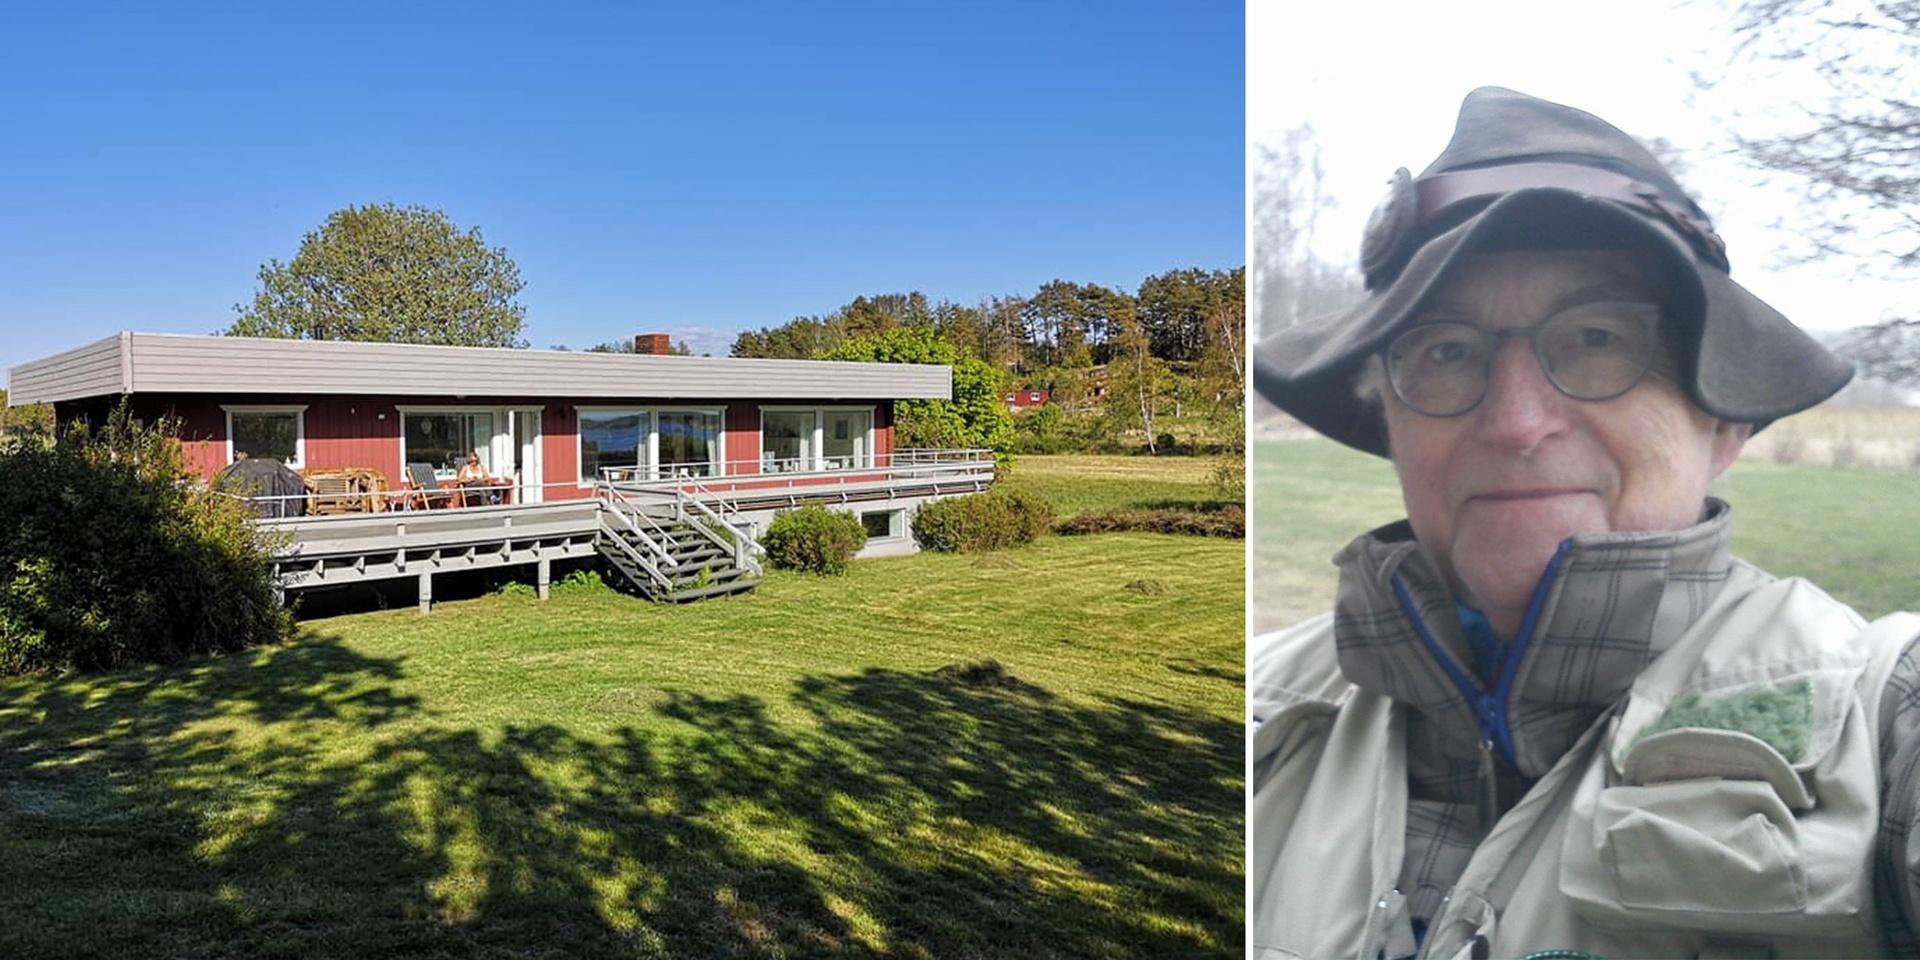 ”Vi tycker staten har gått för långt”, säger Halvor Stormoen, som har en stuga på Galtö i Tanums kommun och har representerat de norska stugägarna i rätten.